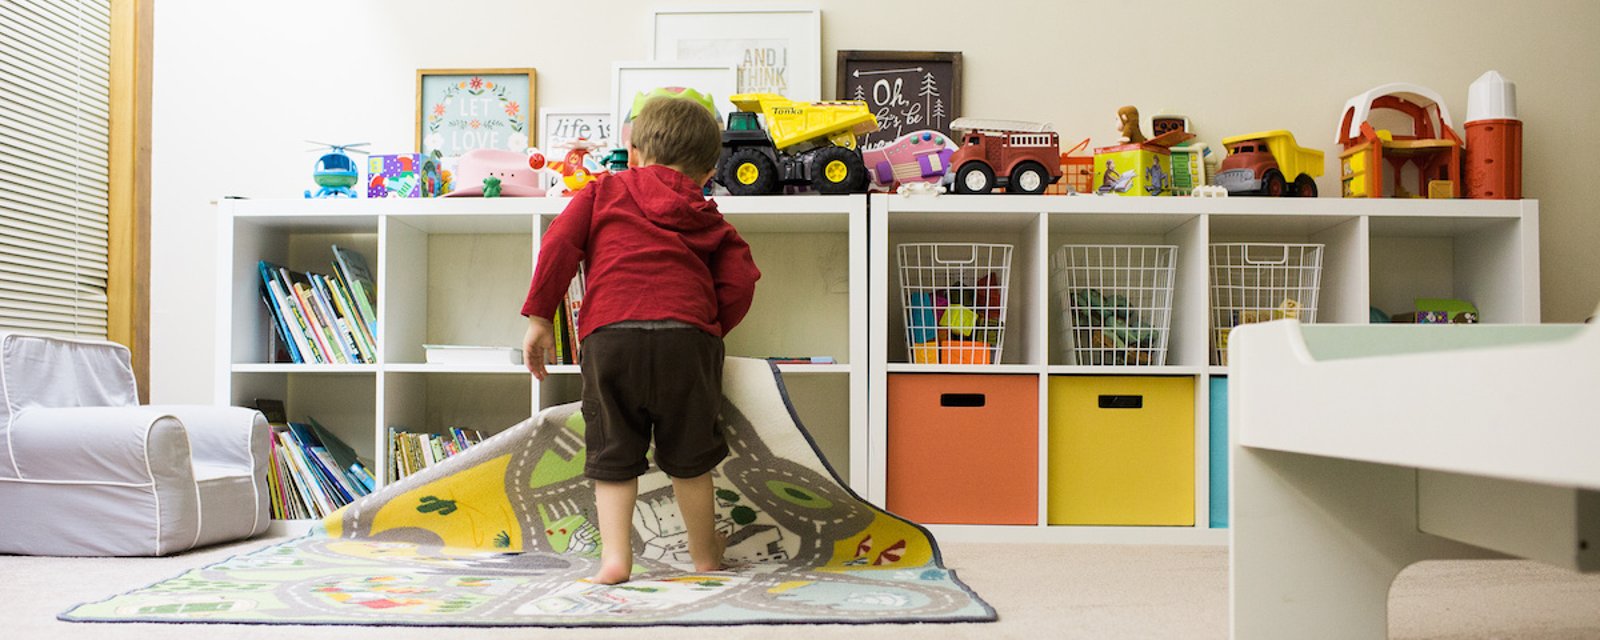 Comment apprendre à vos enfants à ranger leur chambre, selon leur âge